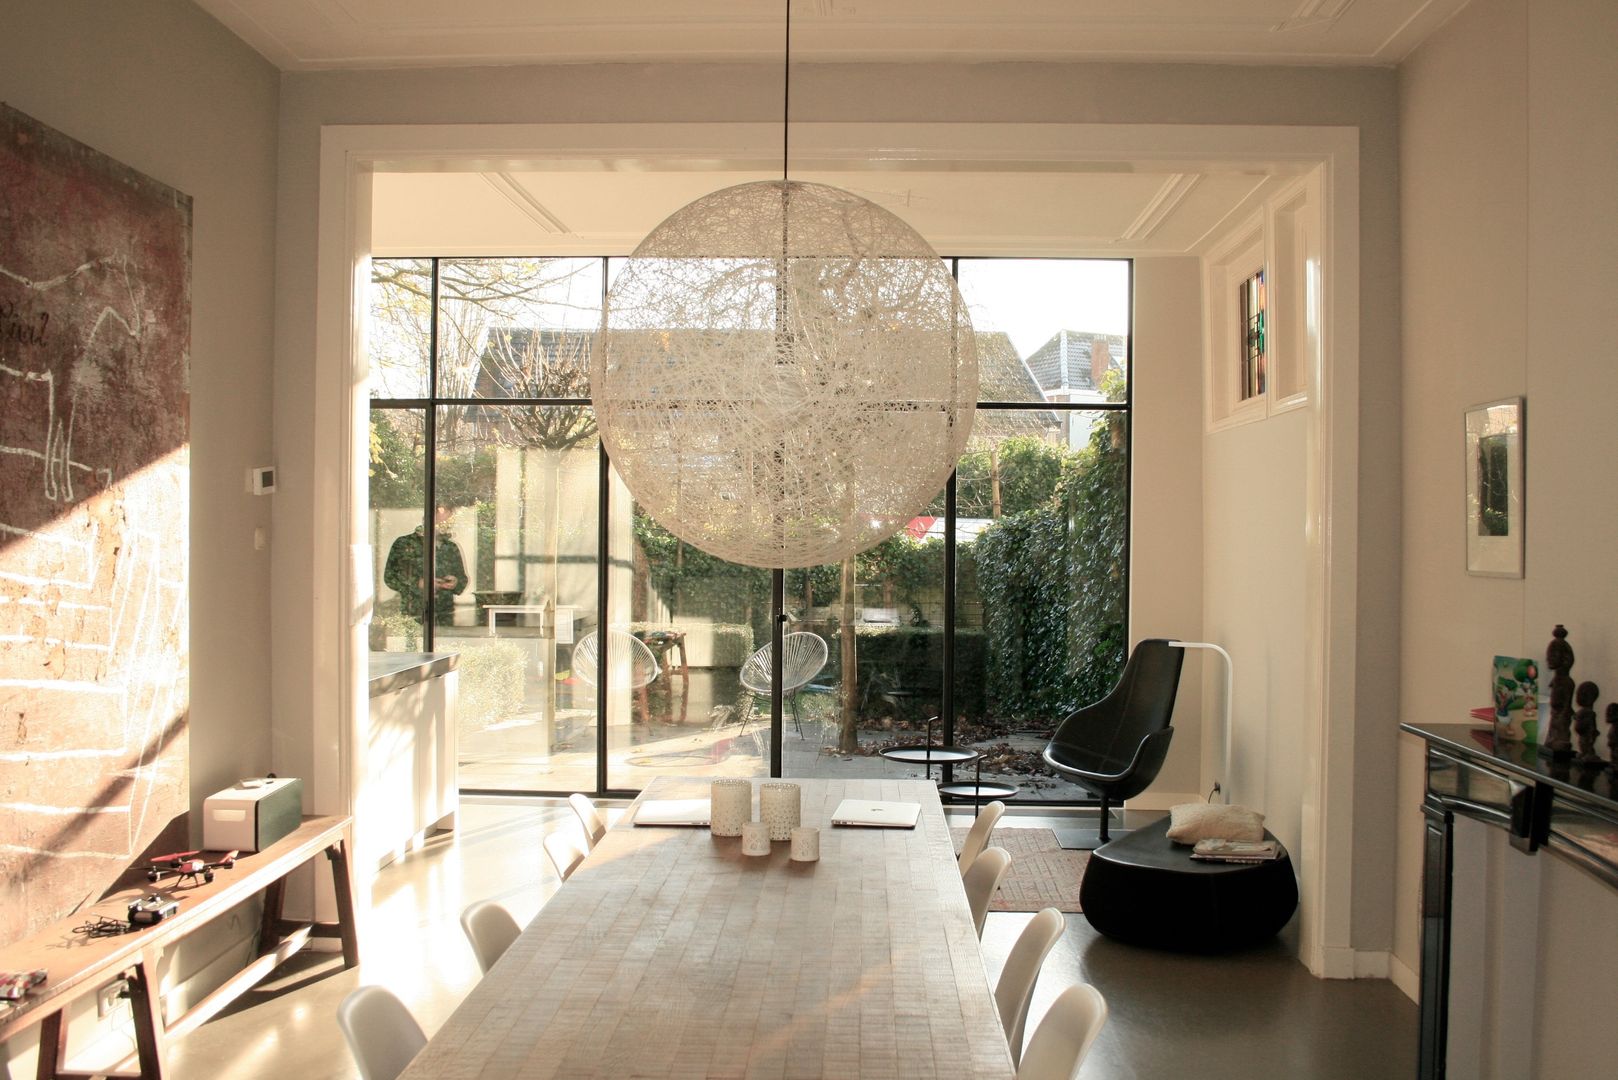 Neem een kijkje in een modern huis in Breda, ddp-architectuur ddp-architectuur 미니멀리스트 다이닝 룸 금속